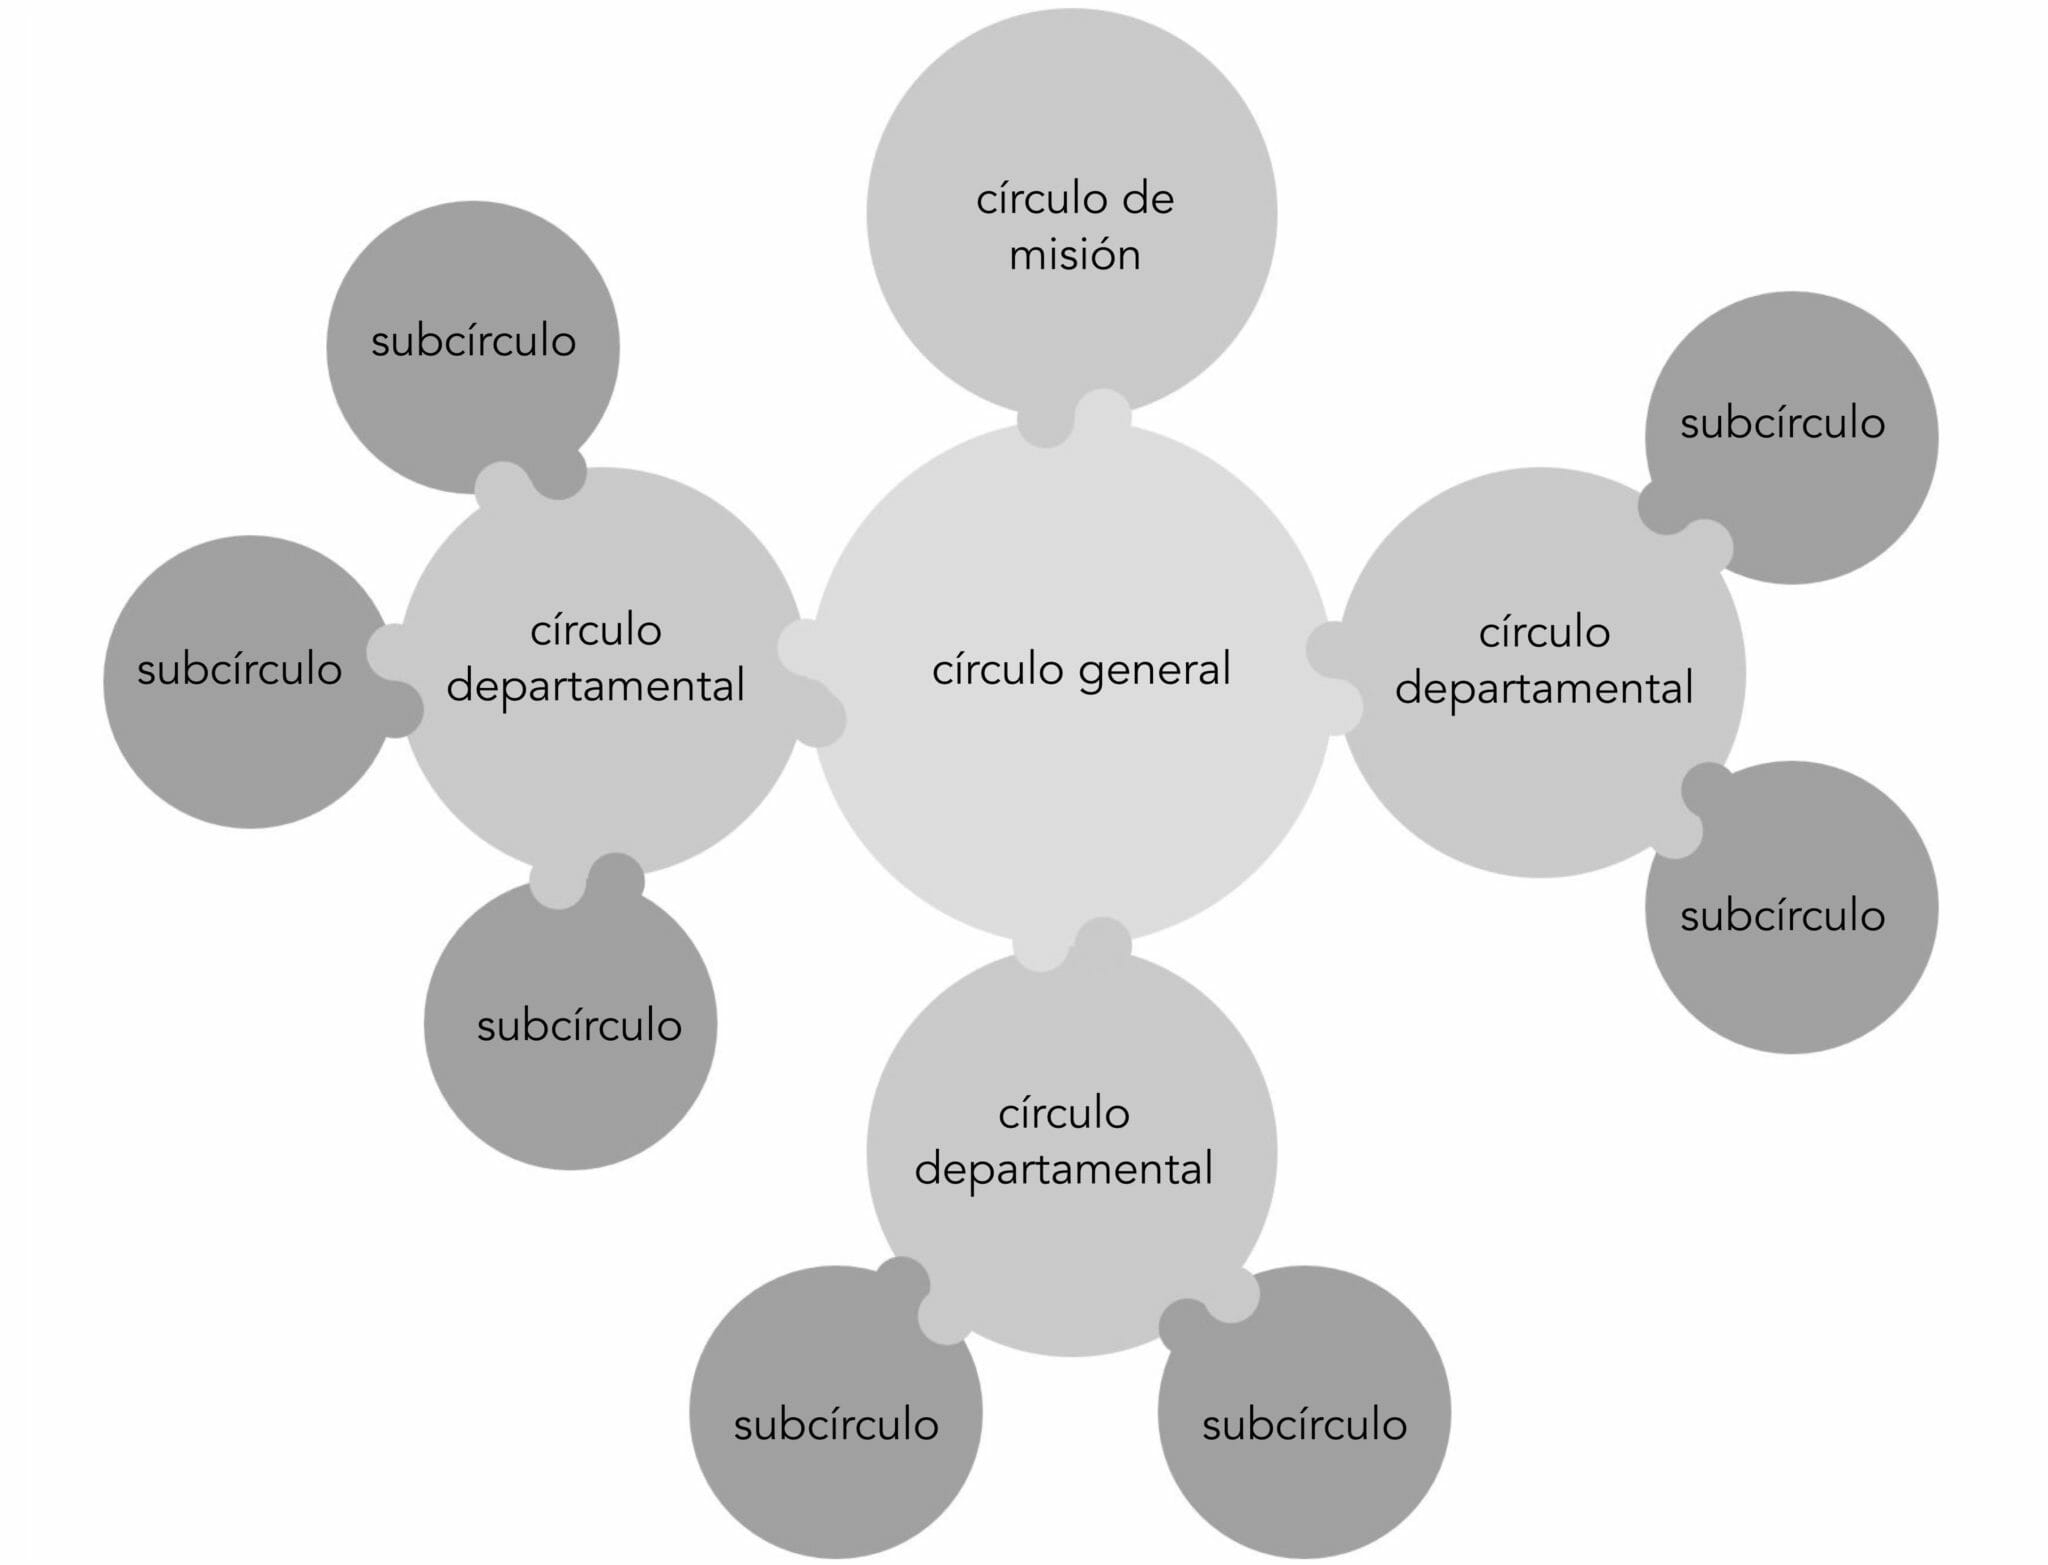 Un diagrama completo muestra el círculo superior de misión, el círculo general central, con 3 subcírculos departamentales que tienen cada uno sus propios subcírculos. En la sociocracia, todos los círculos están doblemente vinculados, representados aquí por círculos que se conectan.